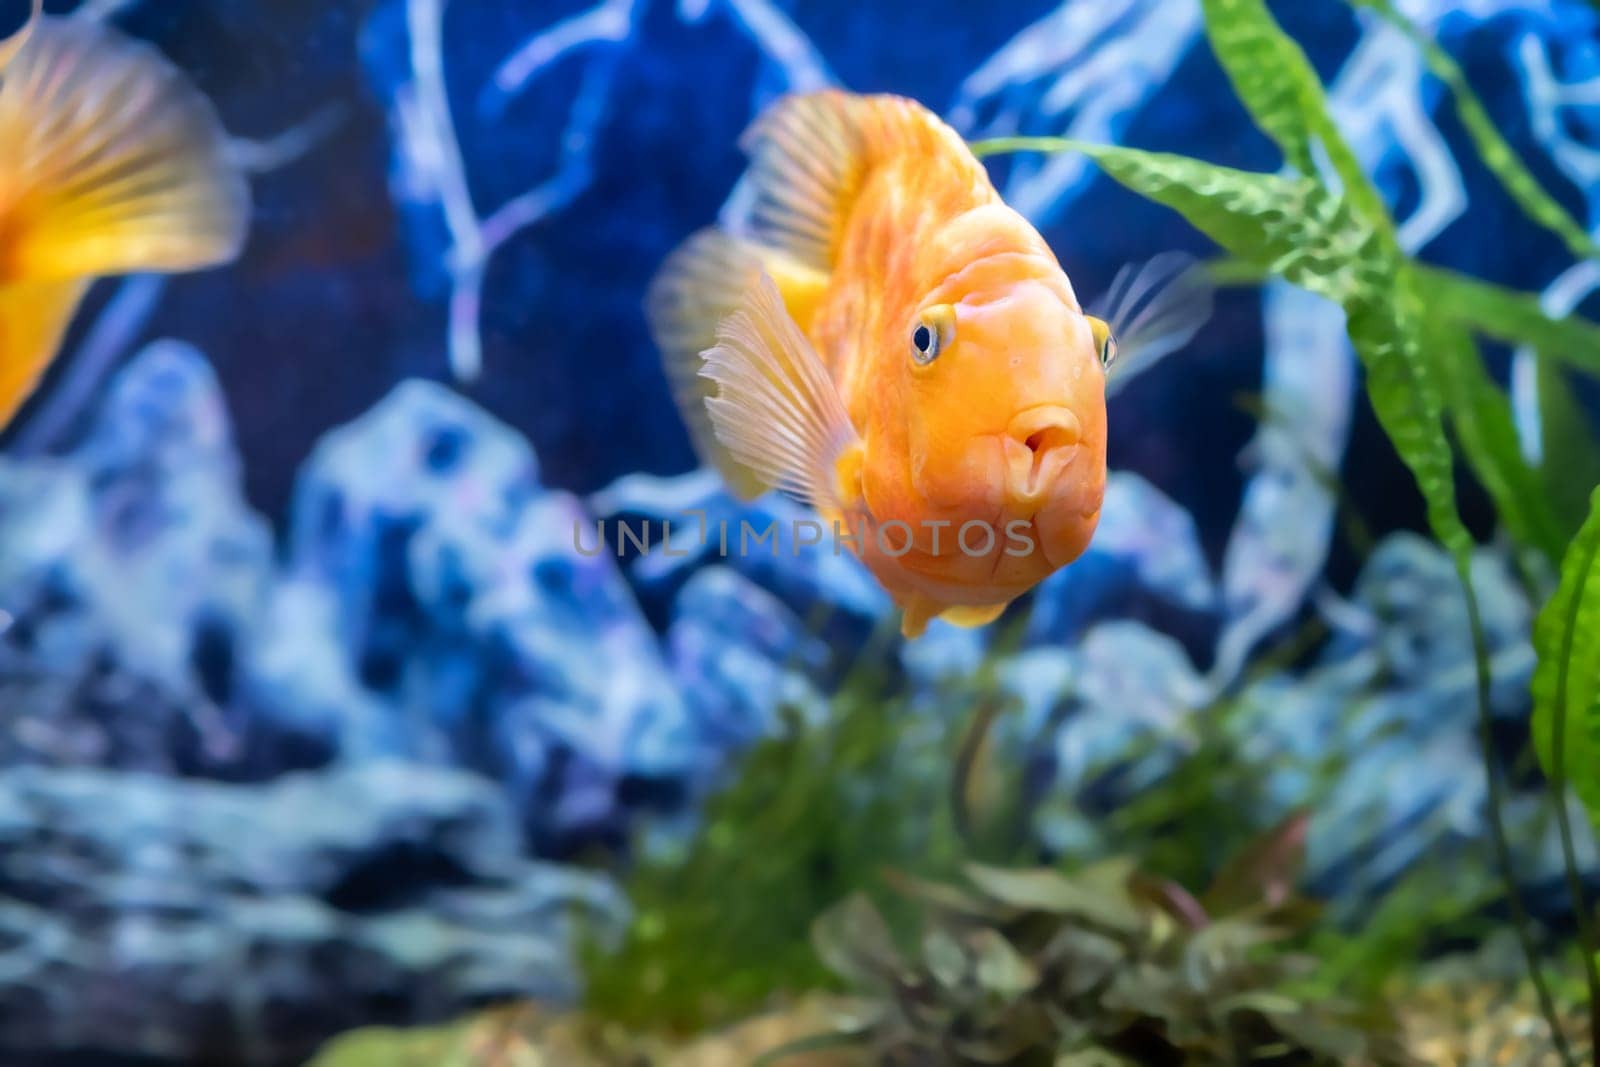 Orange parrot fish in the aquarium. Red Parrot Cichlid. Aquarium fish